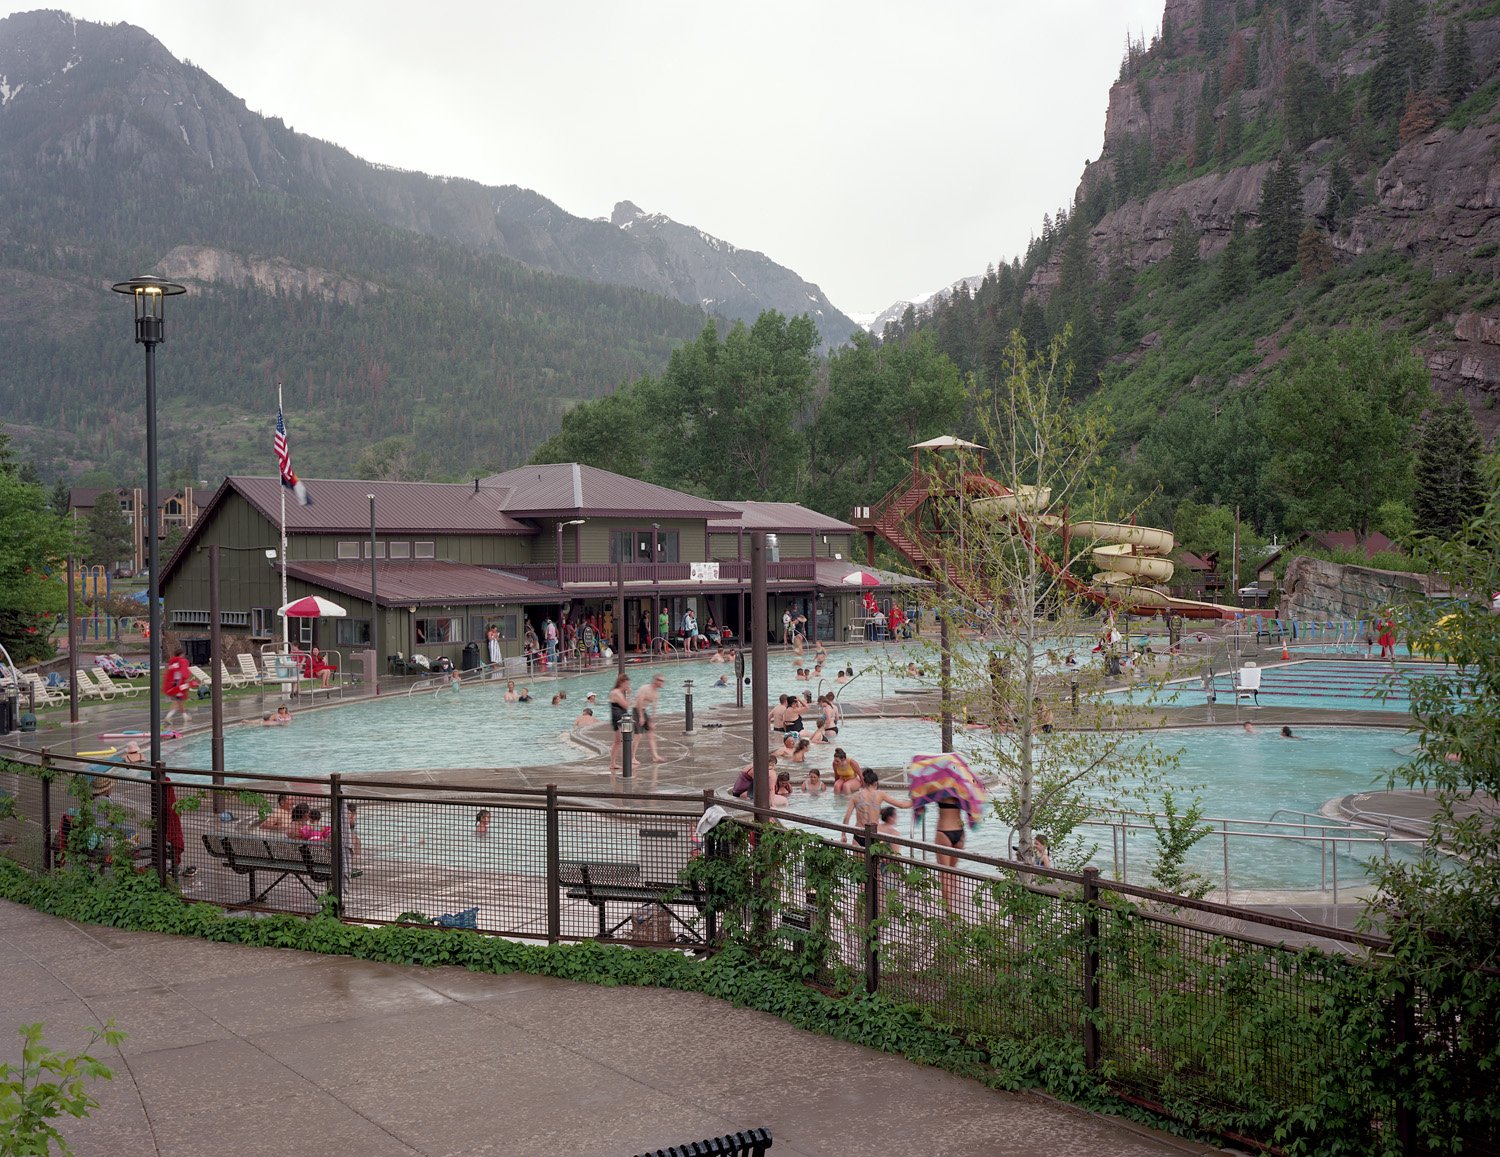 Hot Springs Pool, Ouray, Colorado